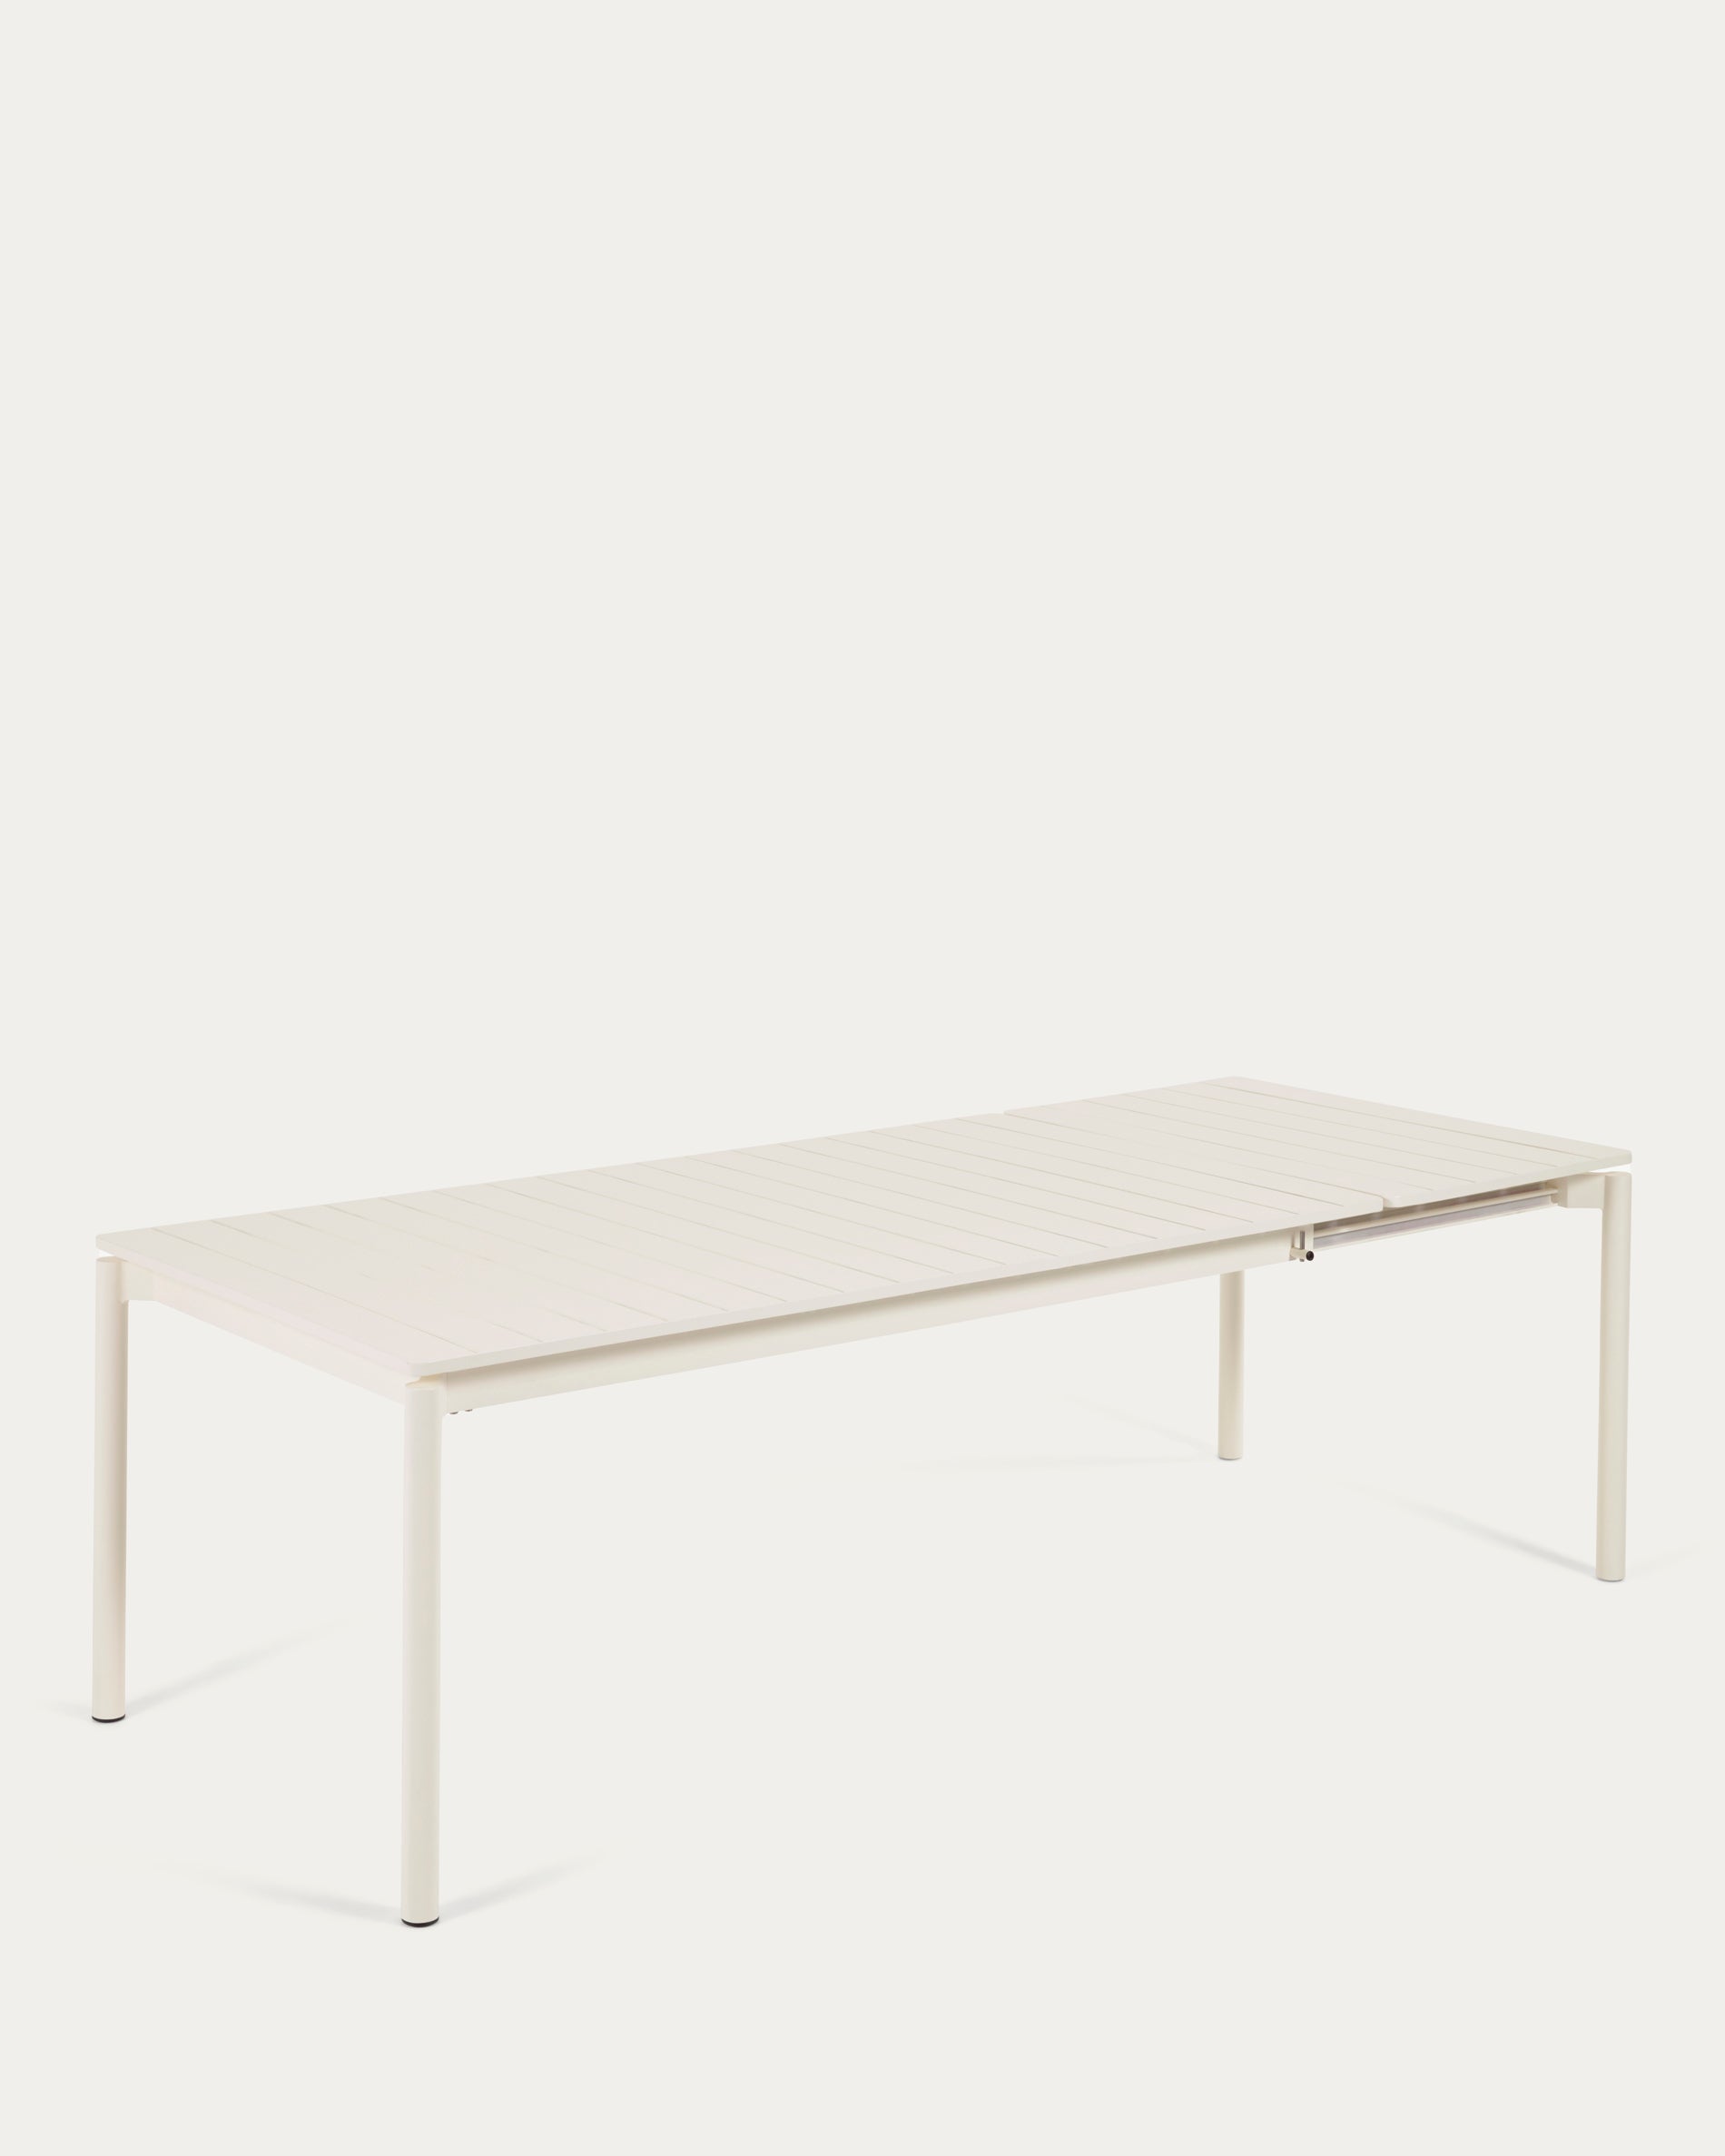 Zaltana kihúzható kültéri asztal alumíniumból nyers befejezéssel, 180 (240) x 100 cm